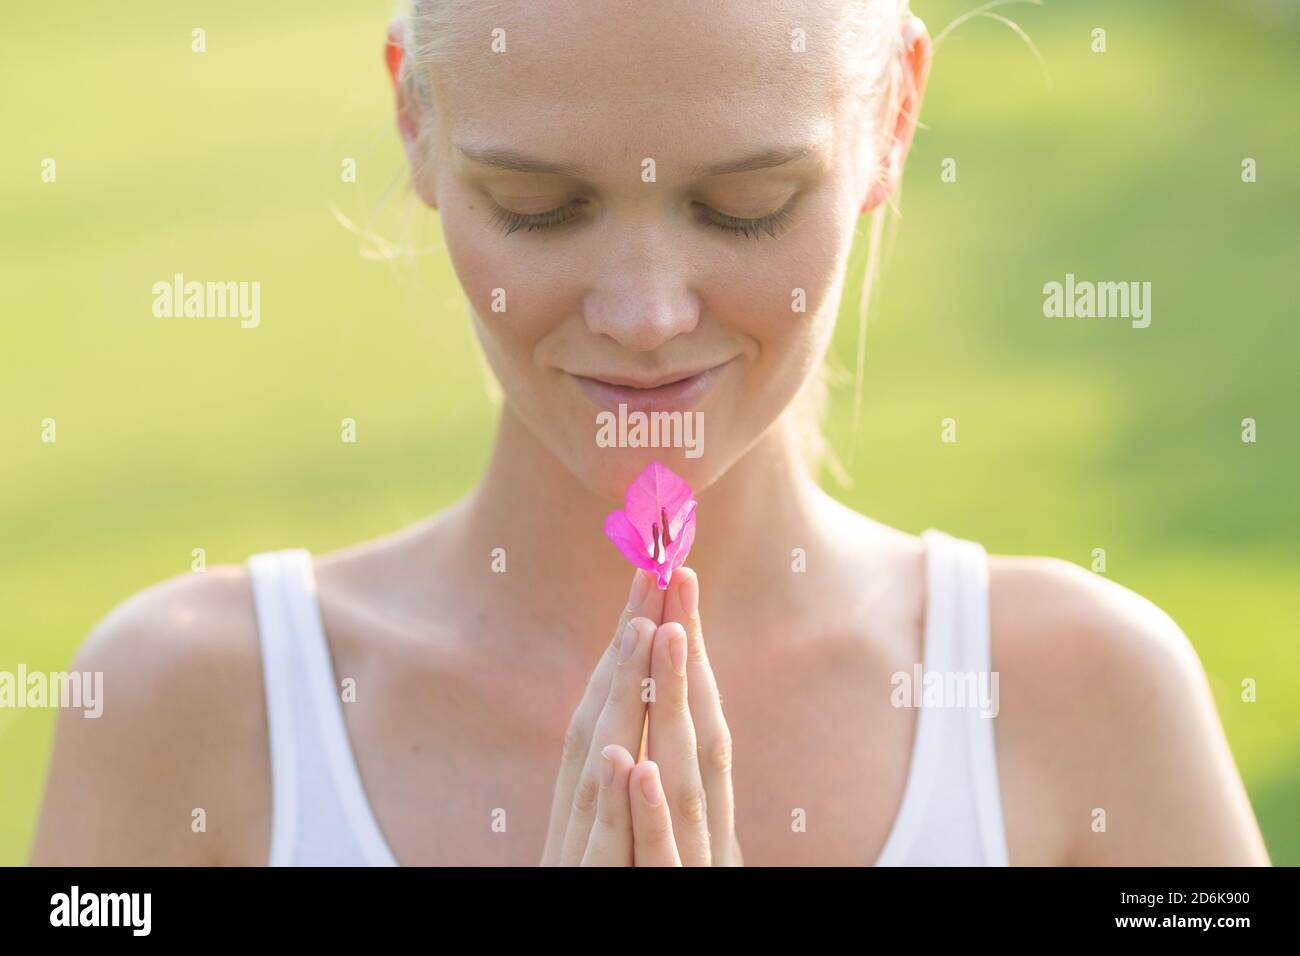 Bienestar y relajación. Mujer joven tranquila sosteniendo una flor rosa en sus manos contra un fondo verde. Foto de stock